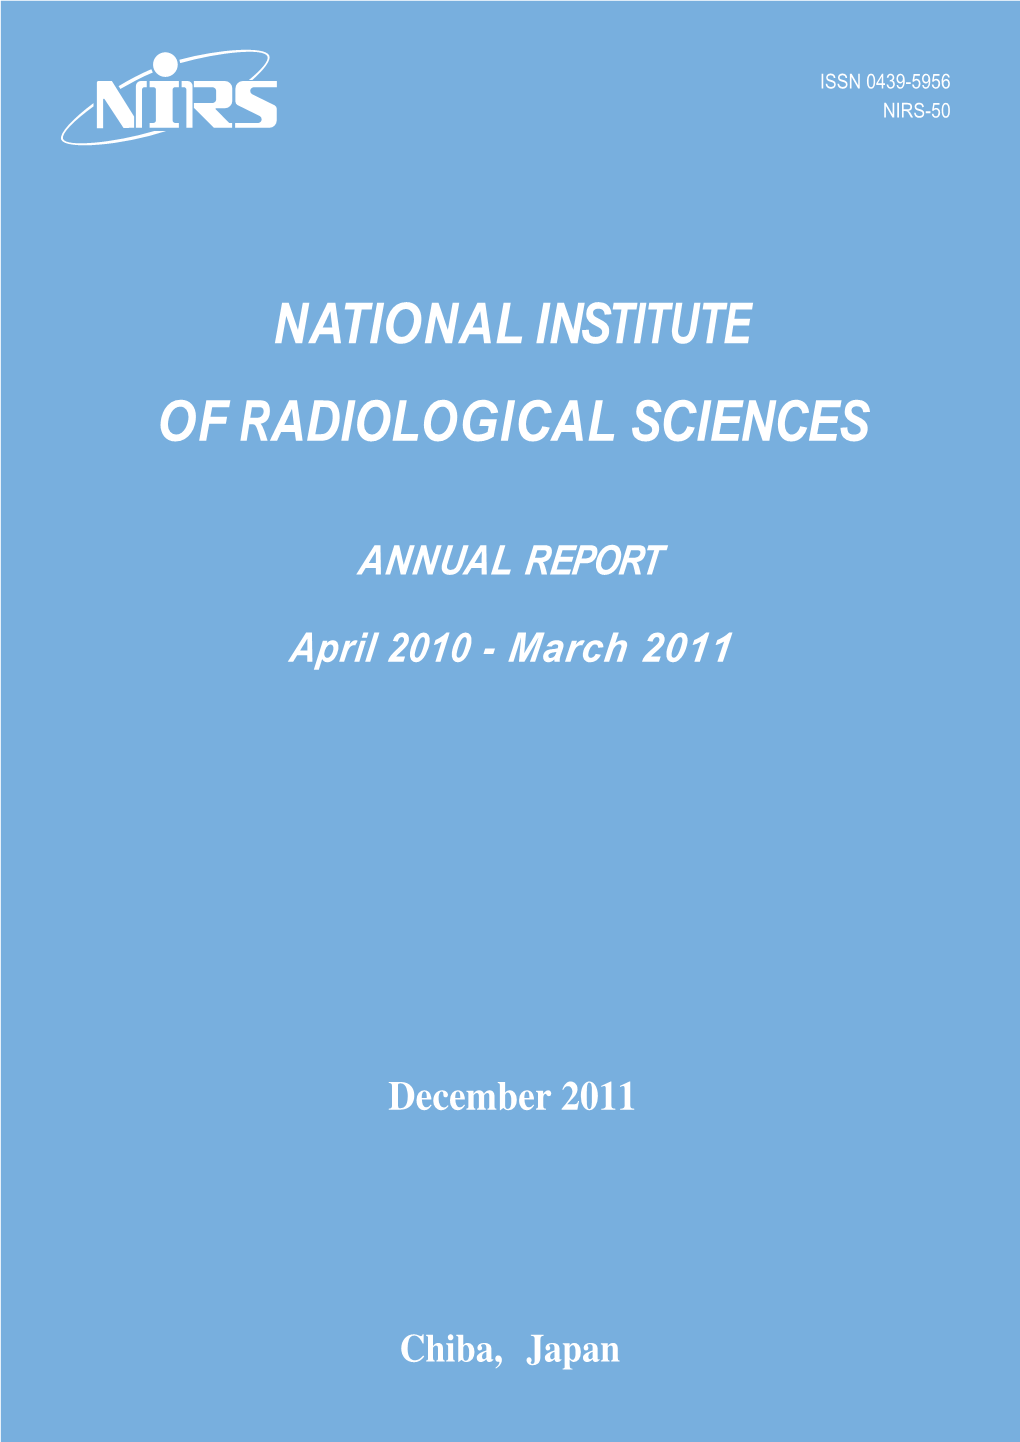 Annual Report April 2010 - March 2011